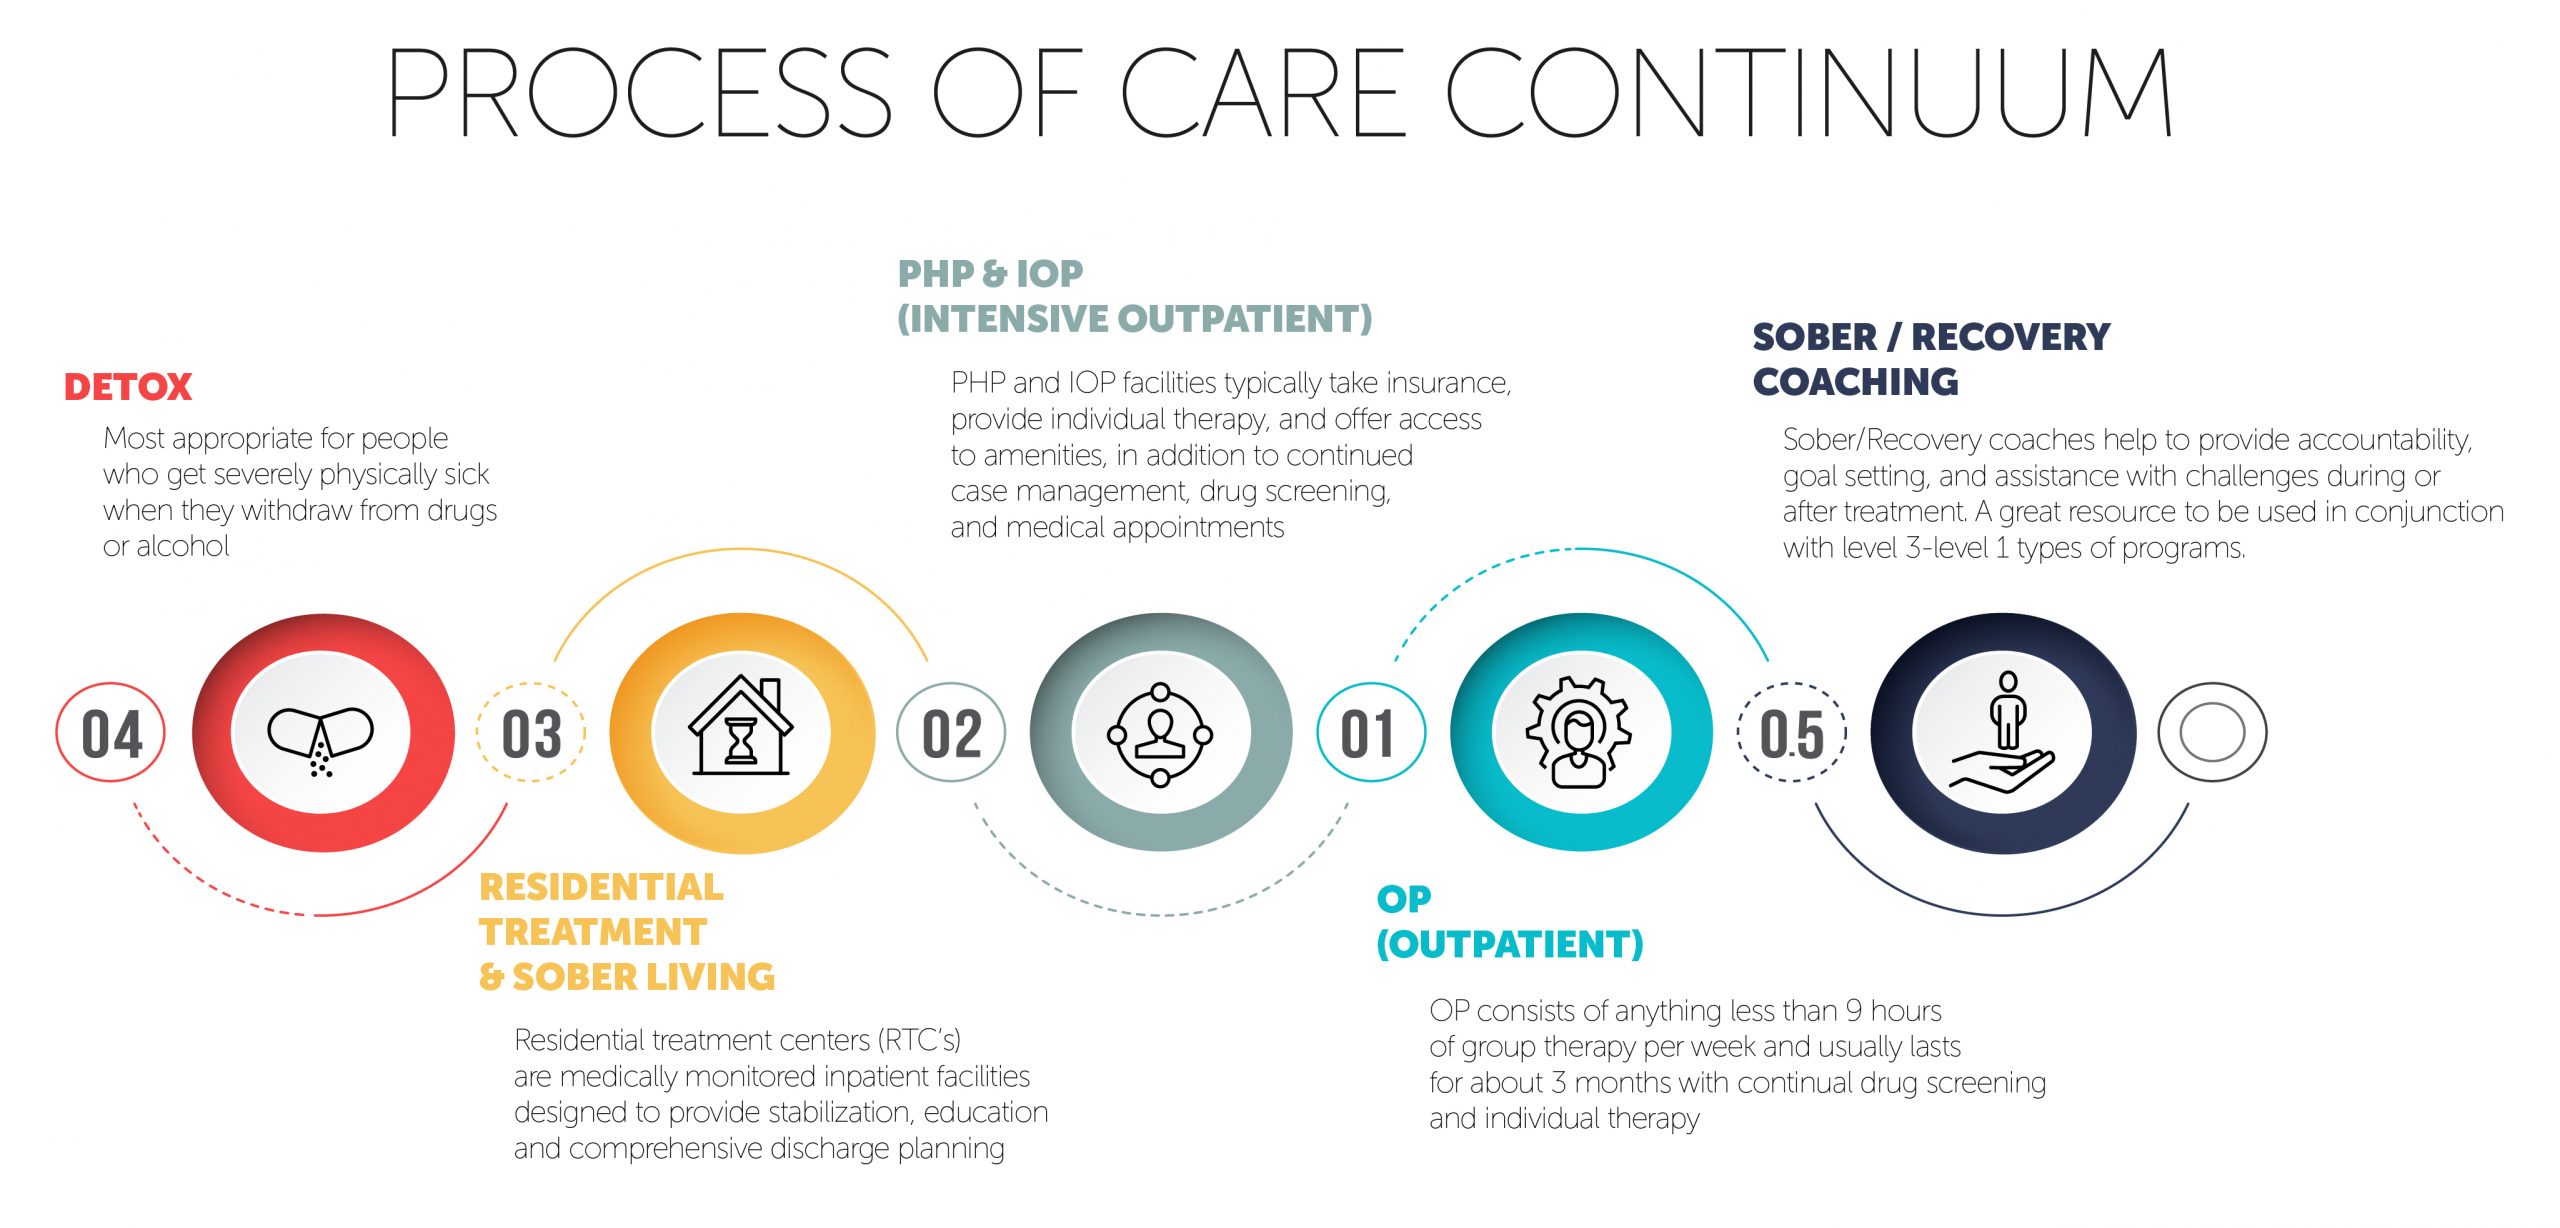 Process of Care Continuum